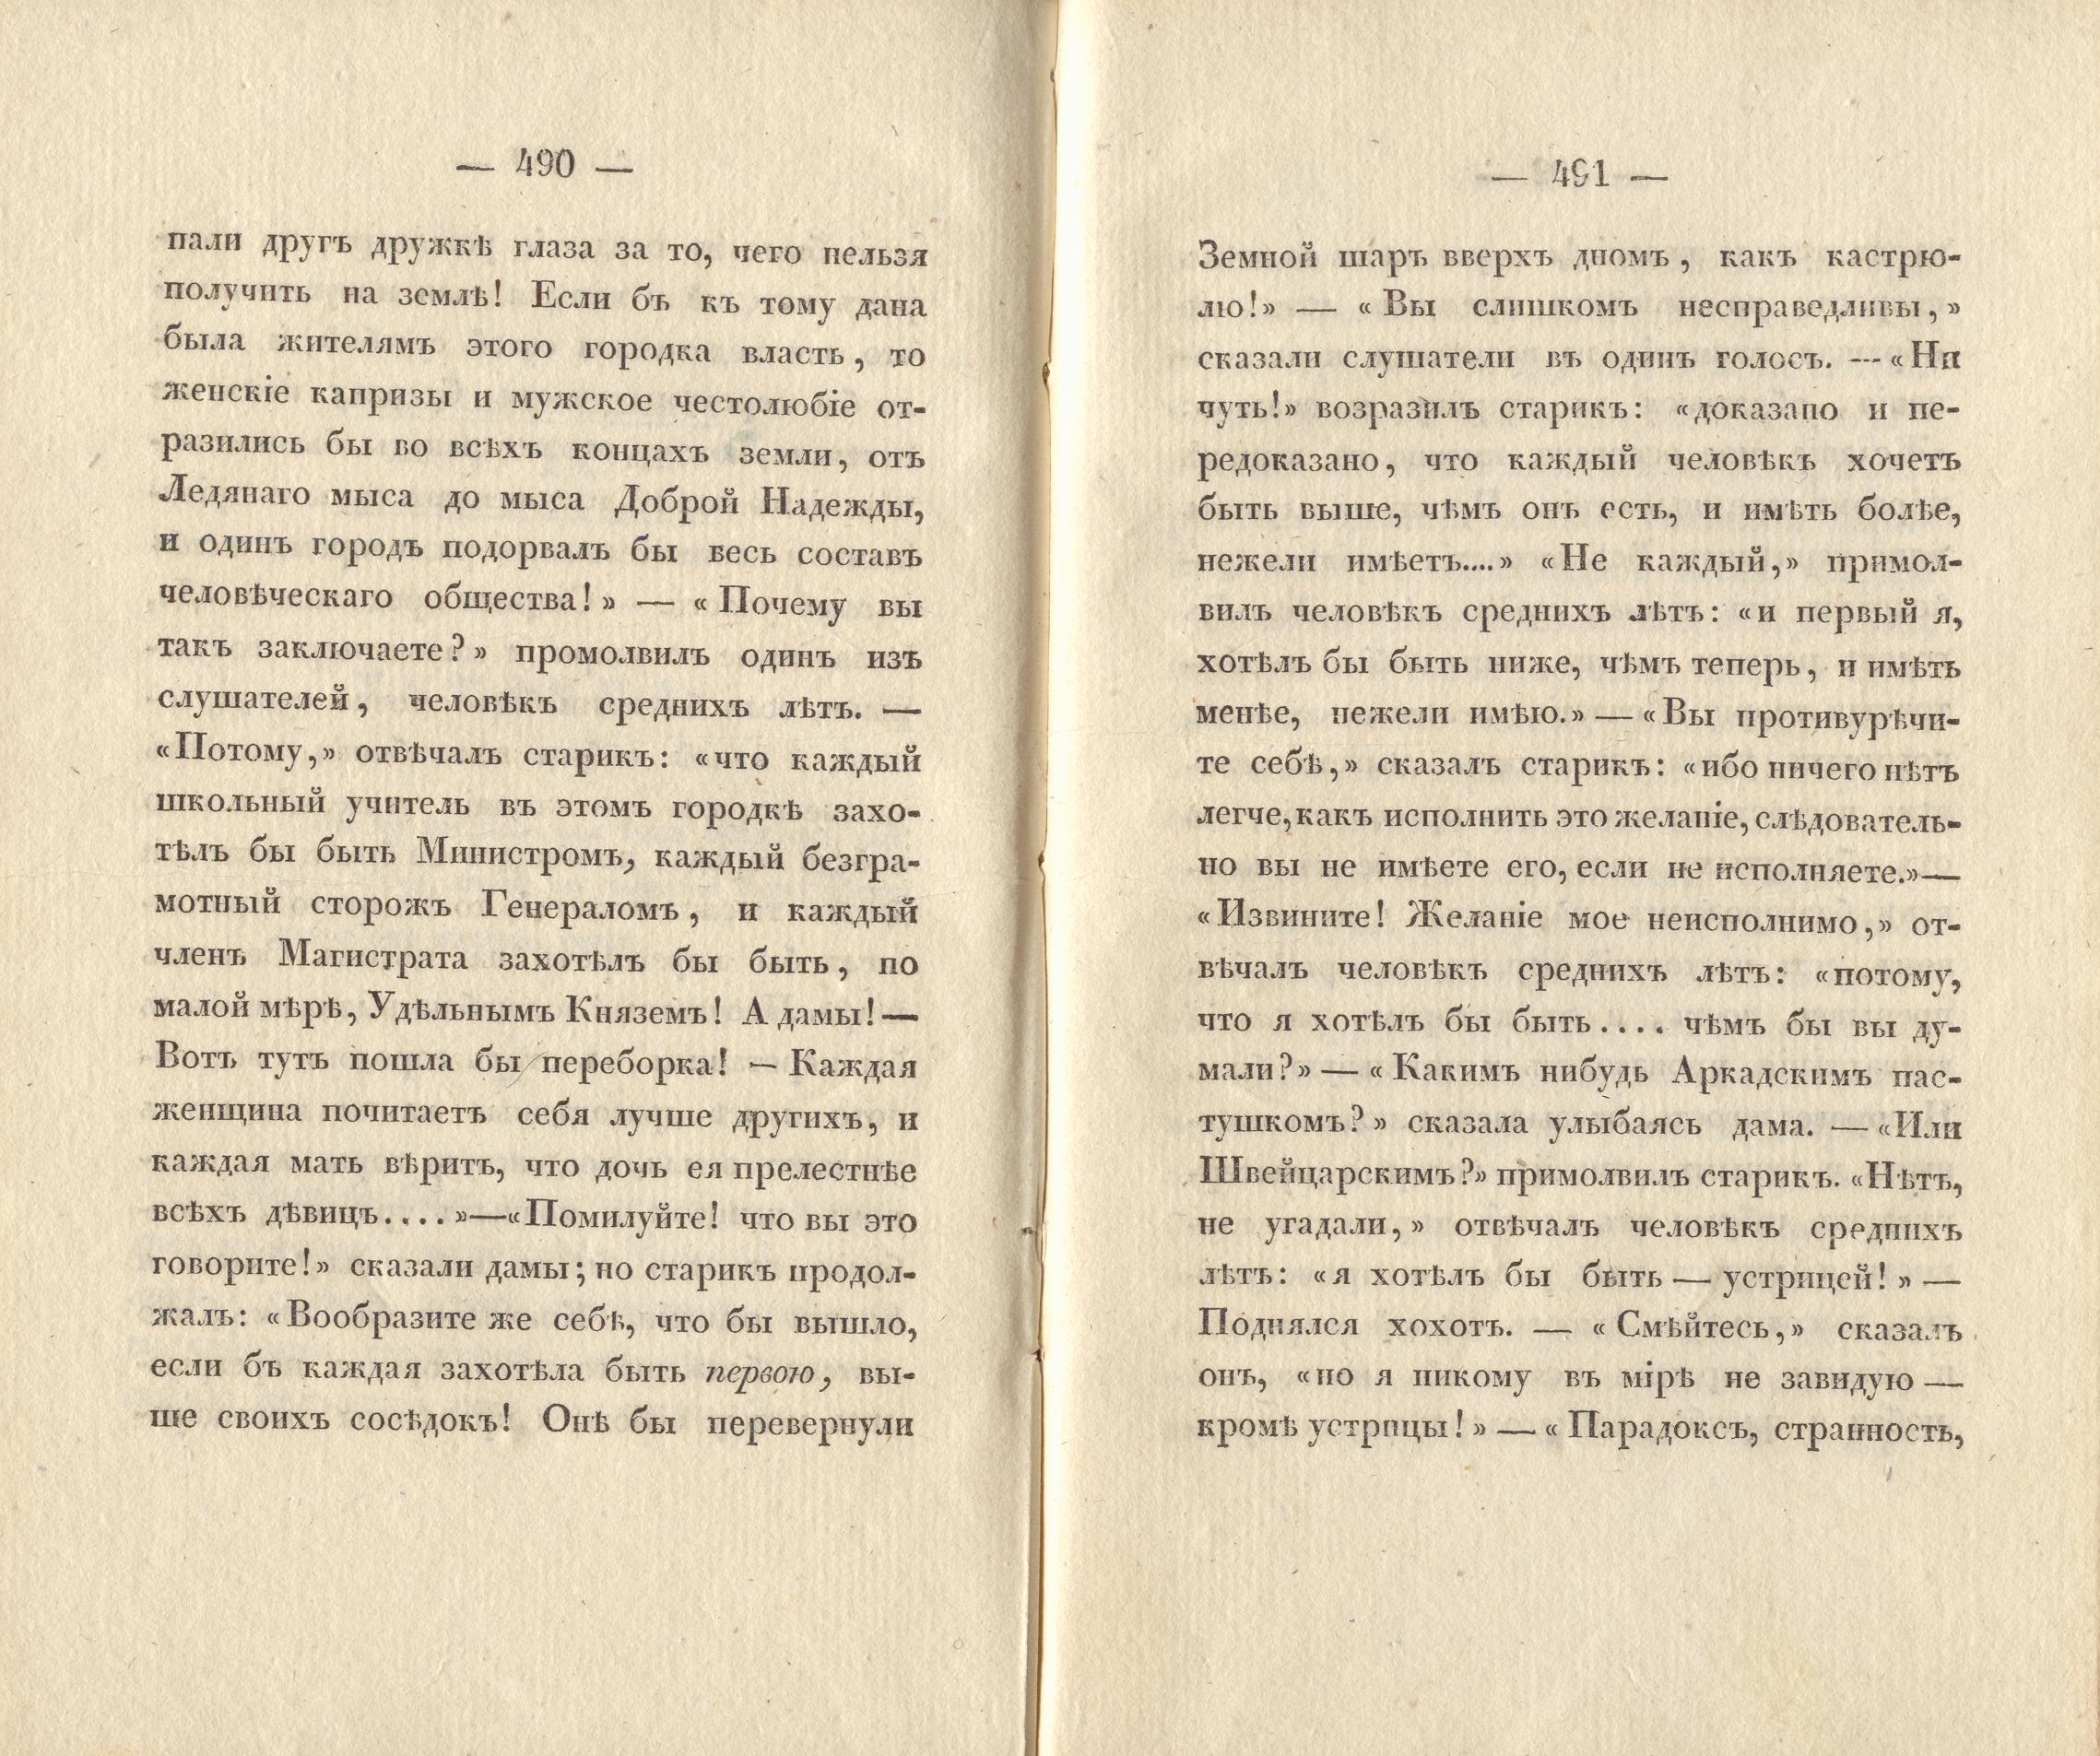 Сочиненія [2] (1836) | 248. (490-491) Main body of text